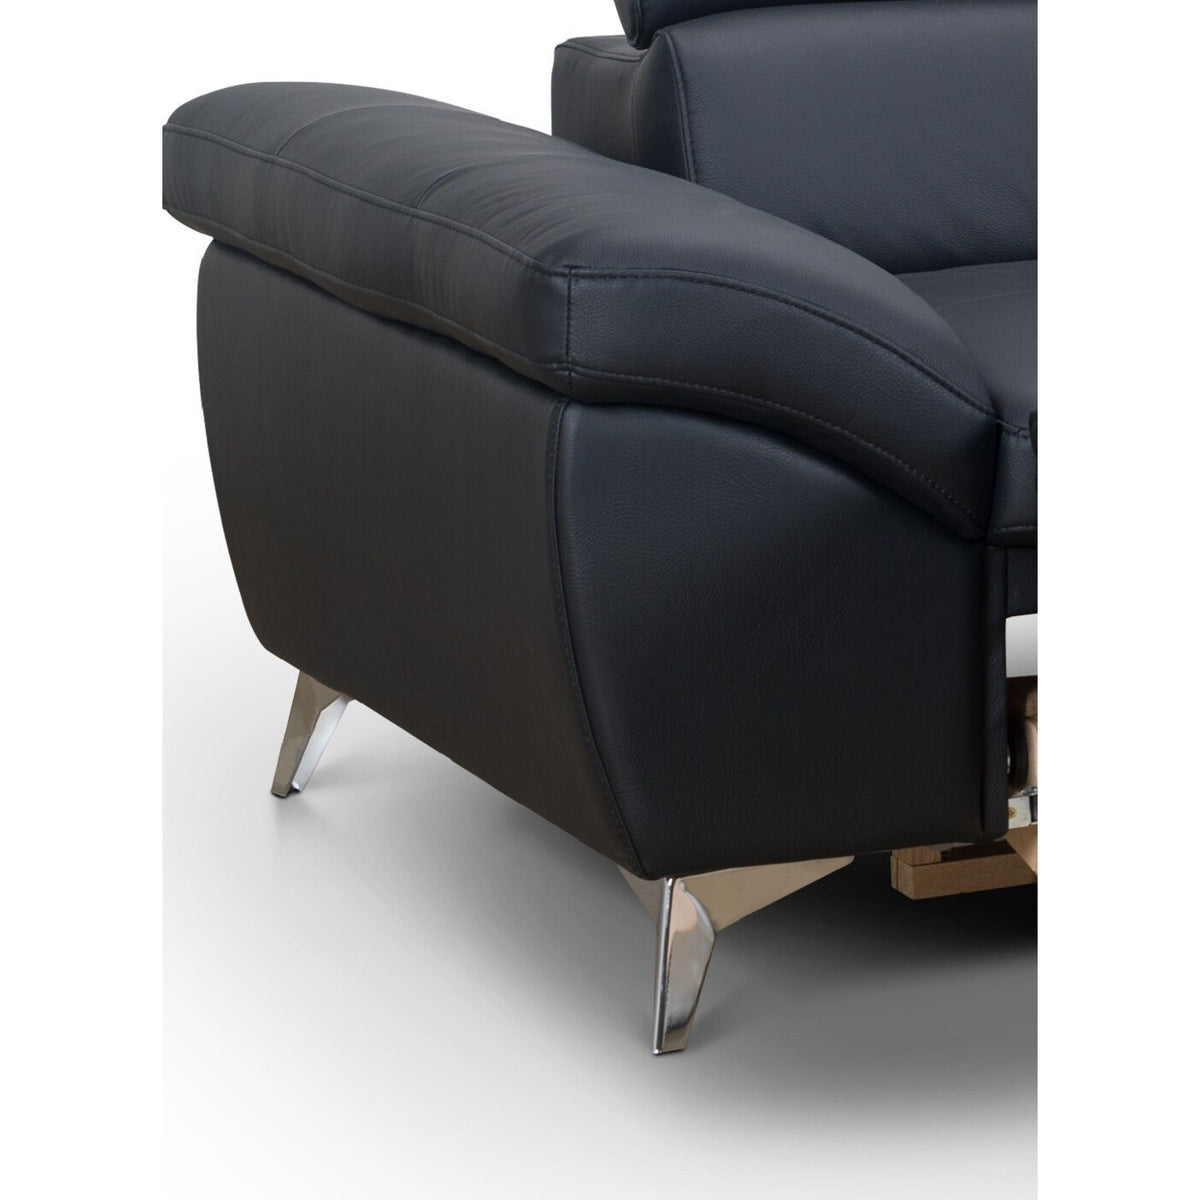 Kožená sedačka rozkládací Barx pravý roh ÚP černá